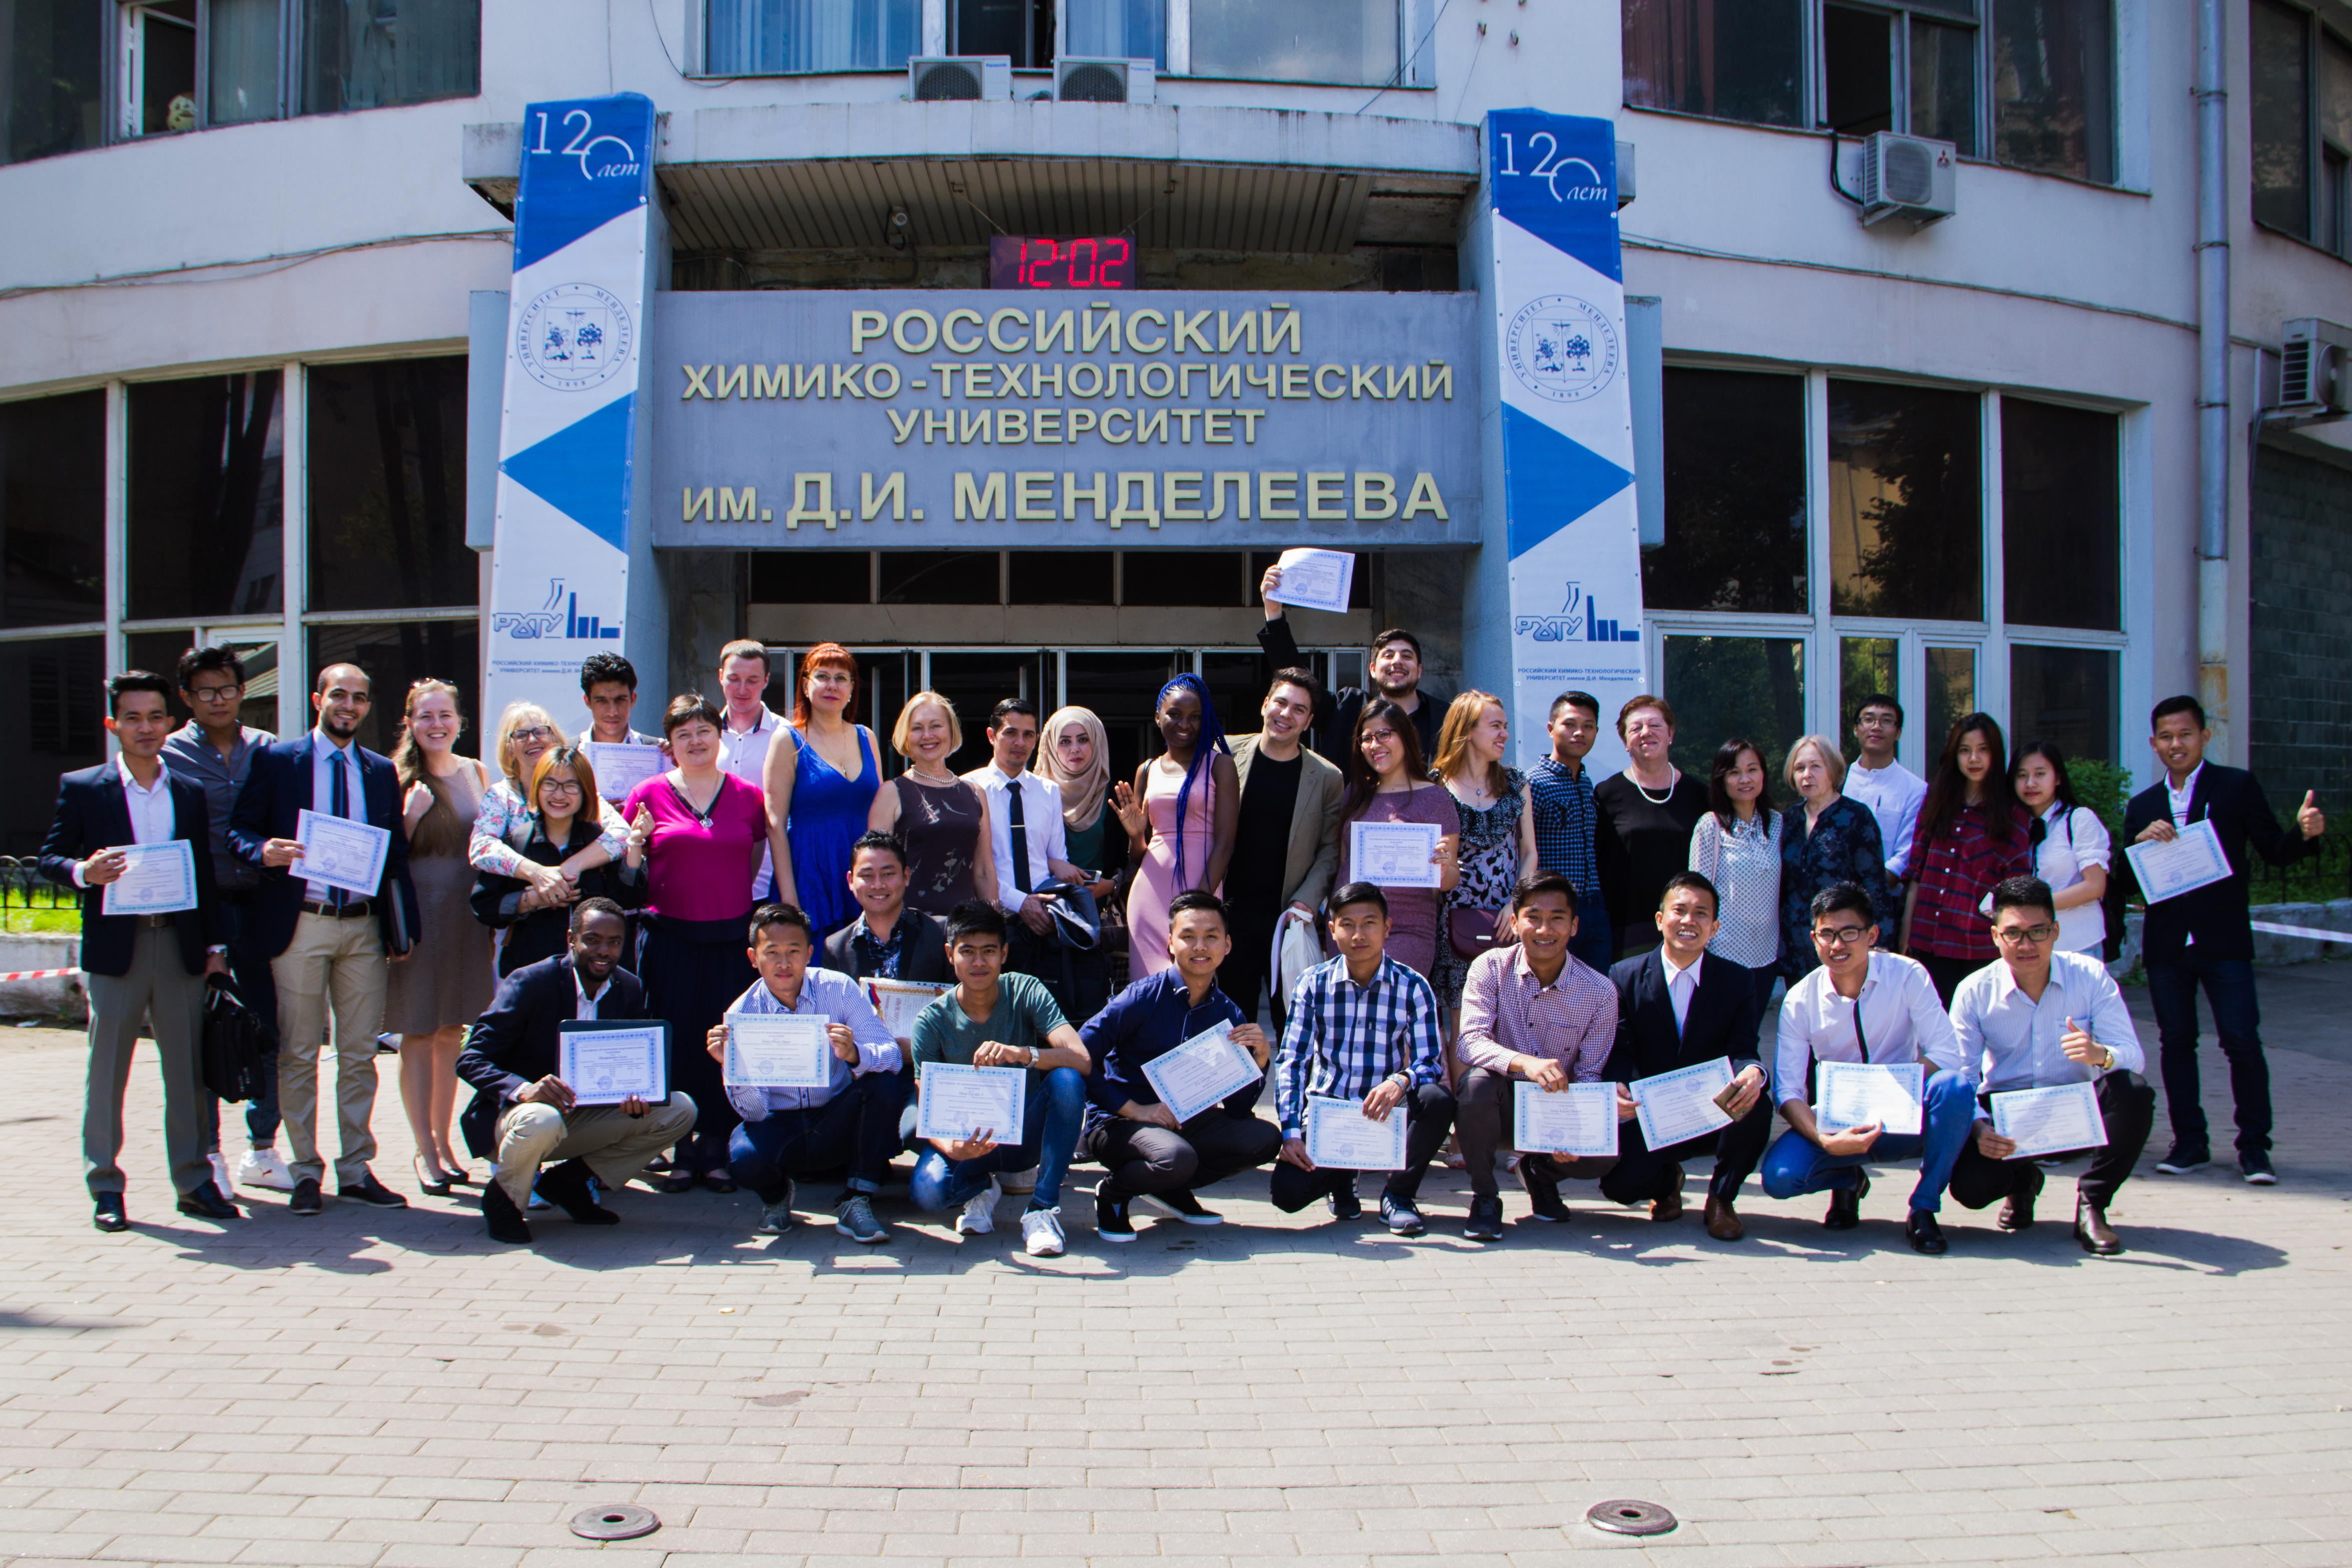 Состоялся выпуск подготовительного отделения РХТУ в Москве